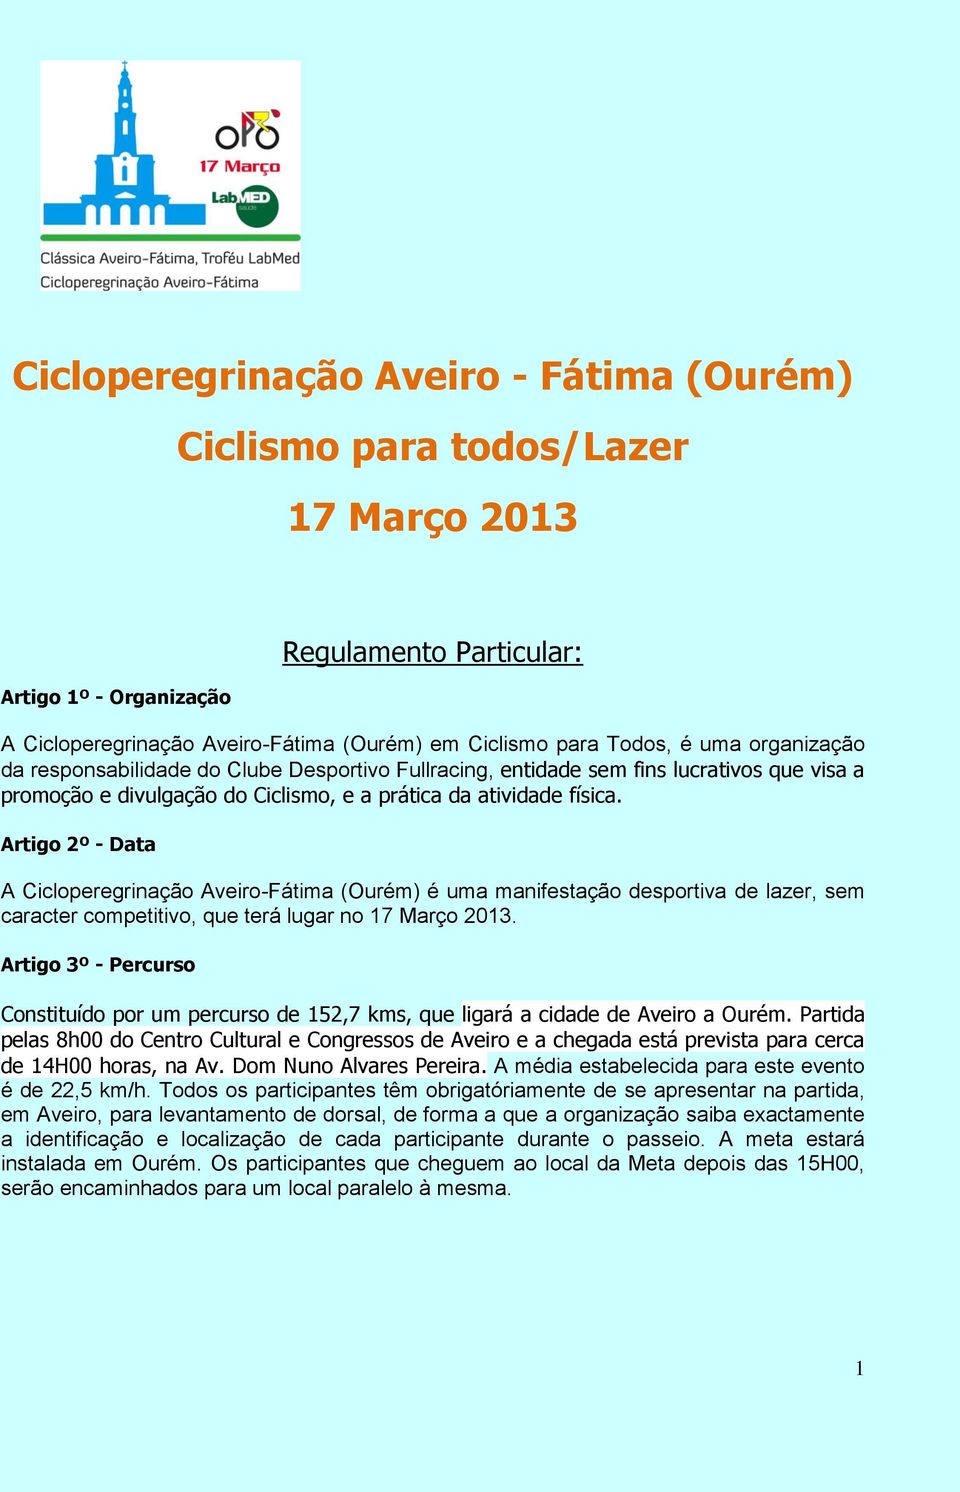 Artigo 2º - Data A Cicloperegrinação Aveiro-Fátima (Ourém) é uma manifestação desportiva de lazer, sem caracter competitivo, que terá lugar no 17 Março 2013.